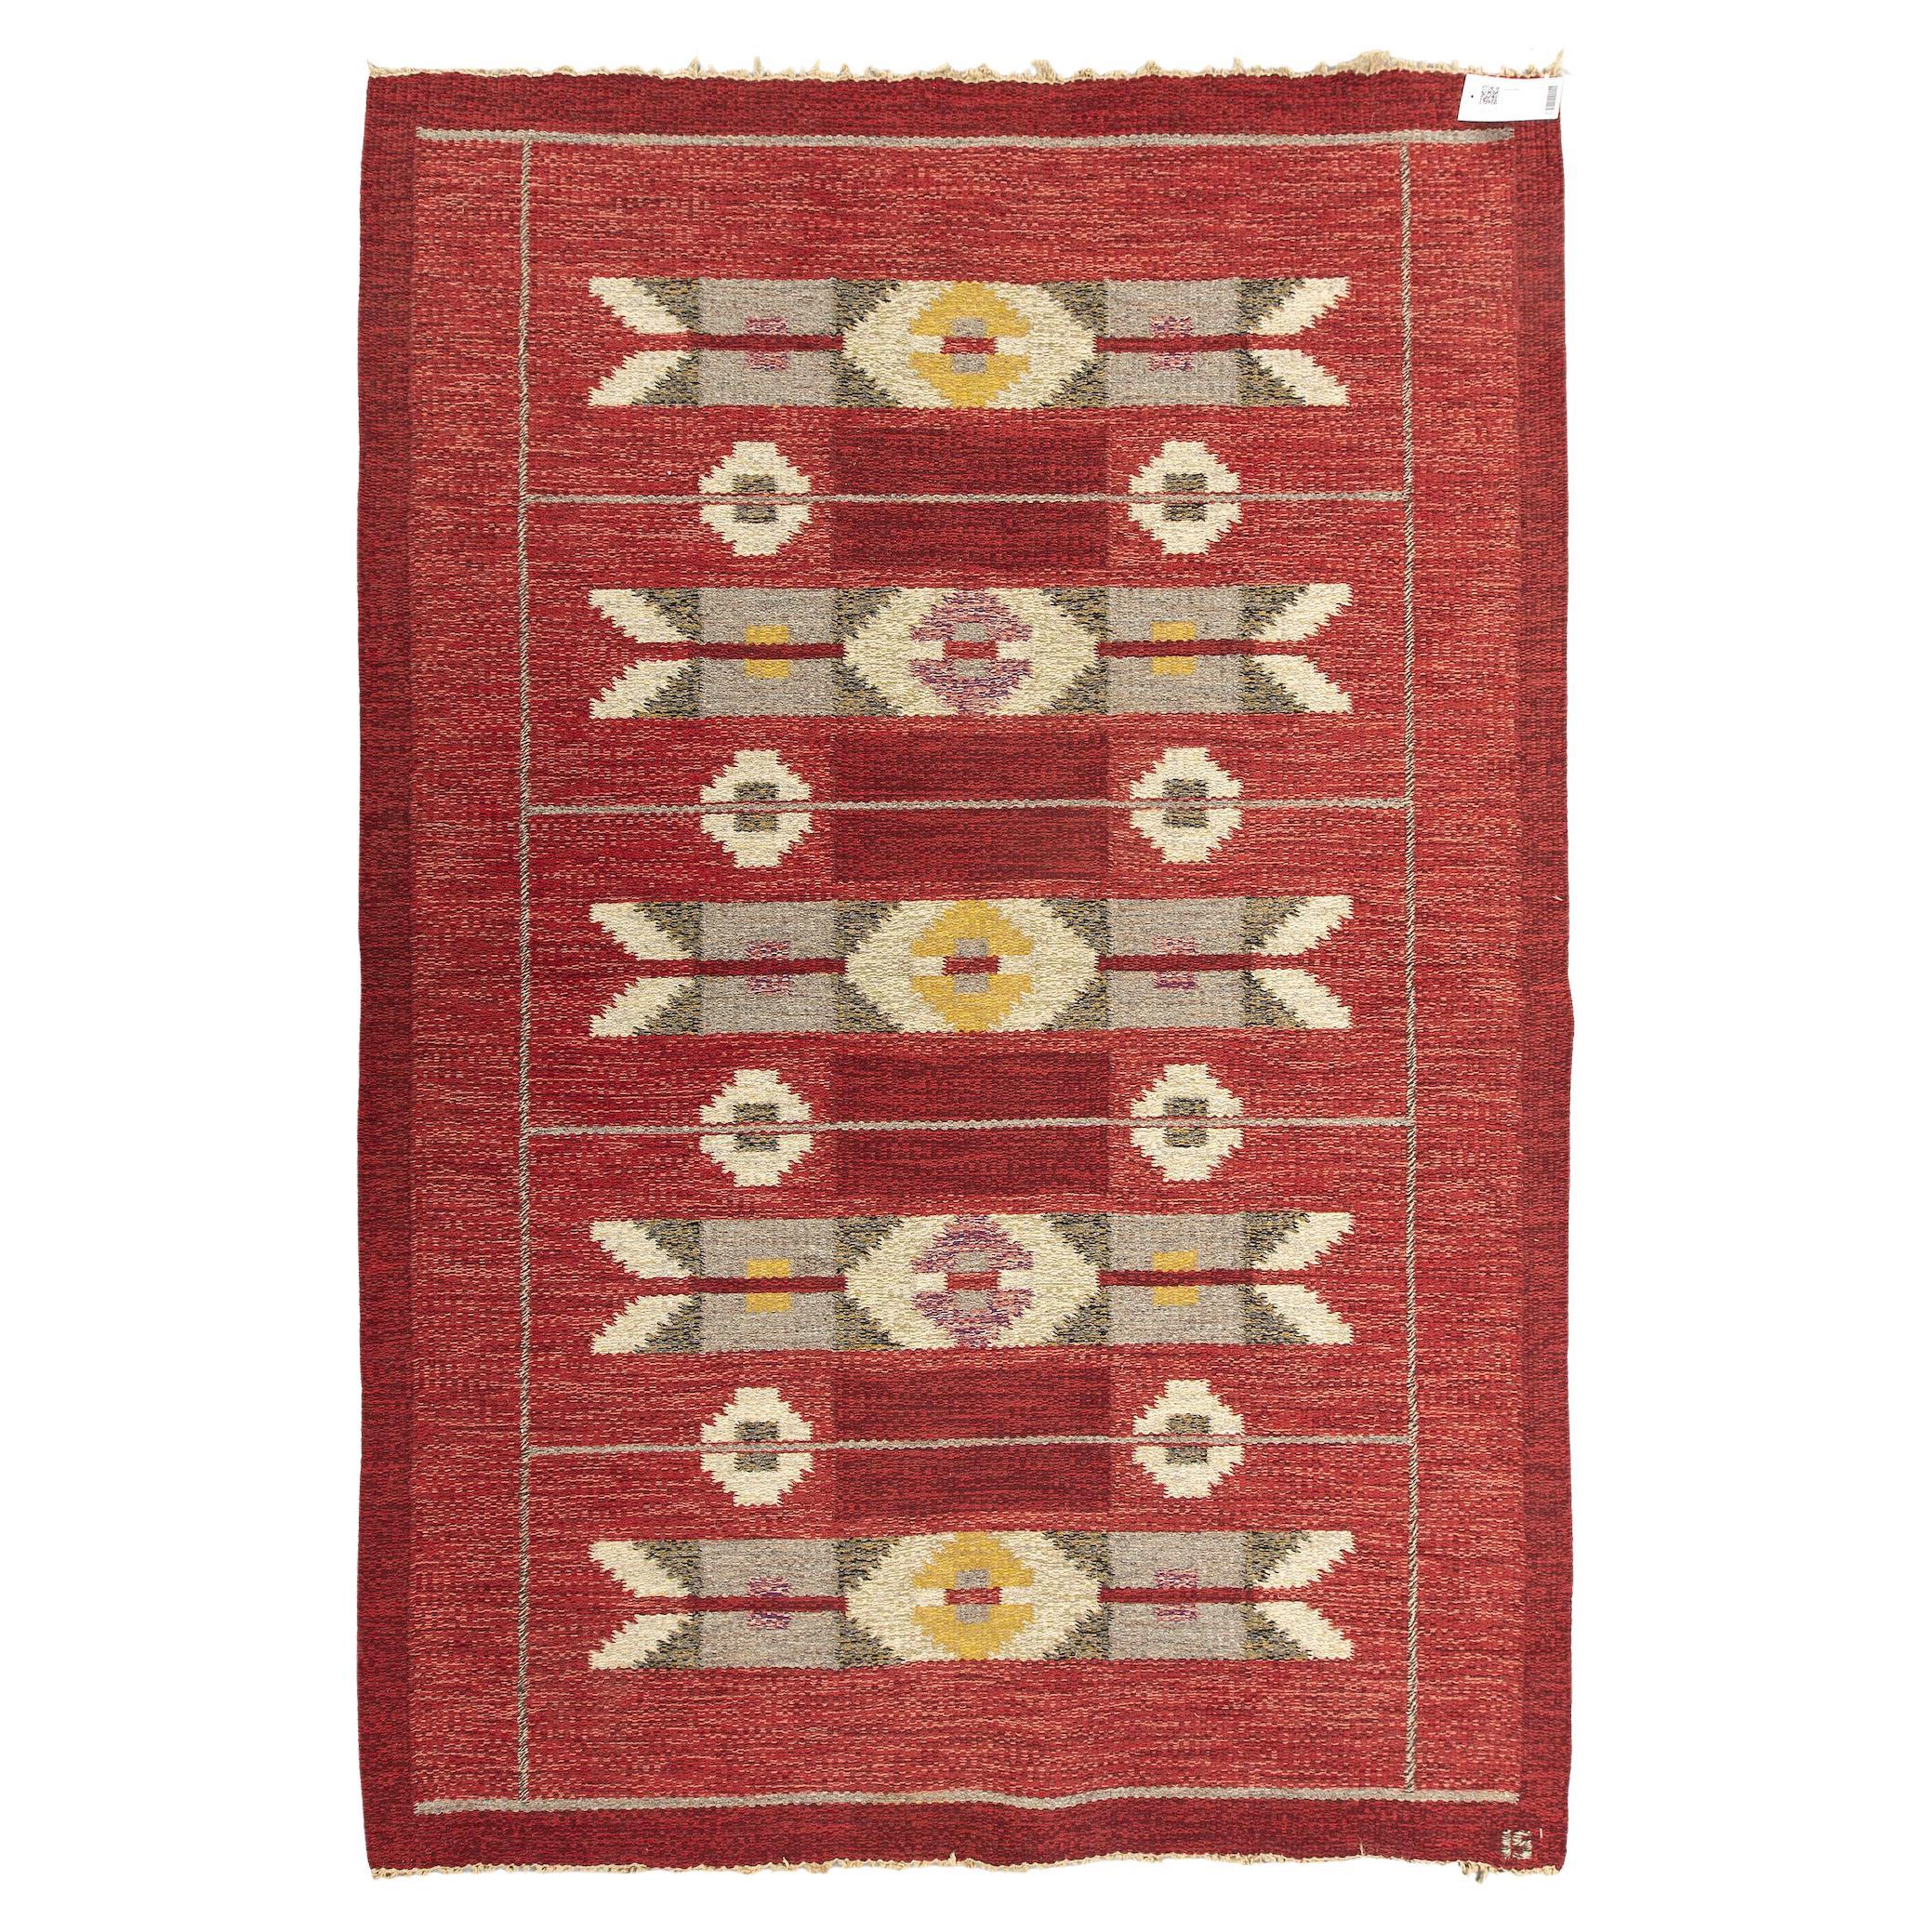 Scandinavian Modern flat-weave rug, signed IS by Ingegerd Silow